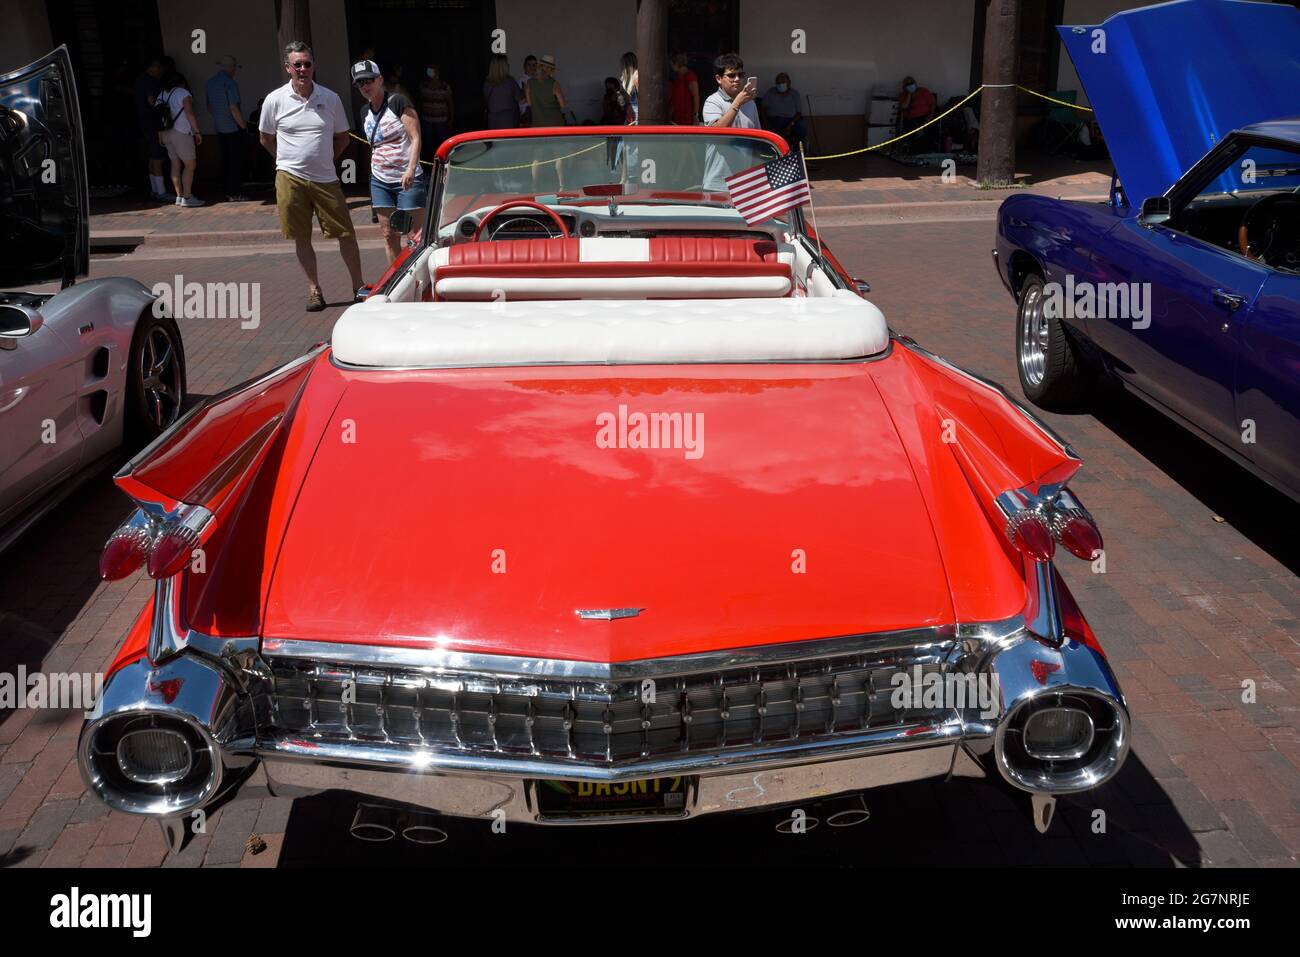 Ein klassisches Cadillac-Cabriolet aus den 1950er Jahren, das auf einer Automobilausstellung vom 4. Juli in Santa Fe, New Mexico, ausgestellt wird. Stockfoto